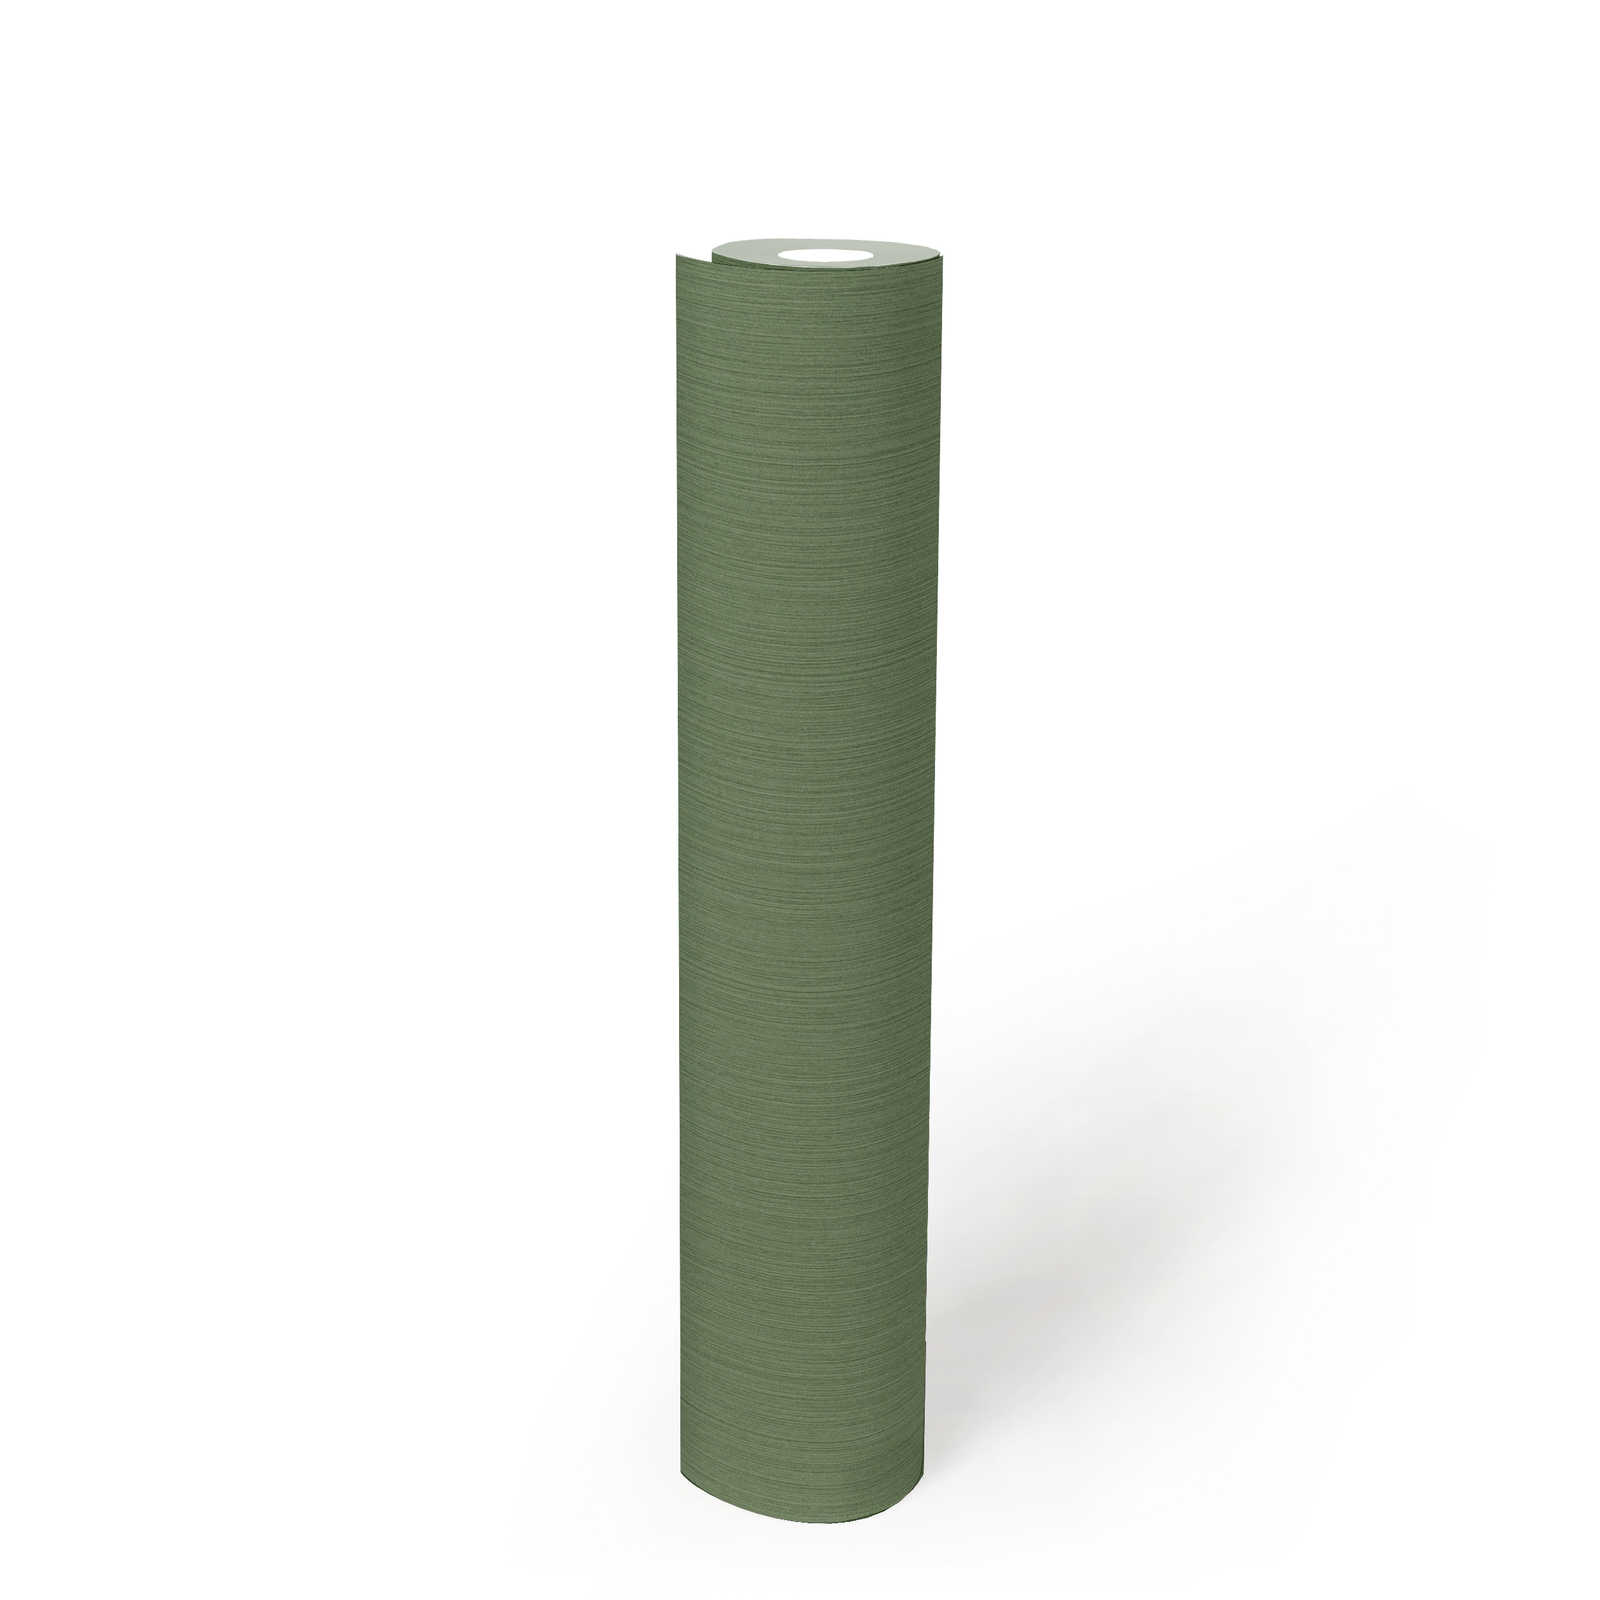             Effen groen behang met gevlekt textieleffect van MICHALSKY
        